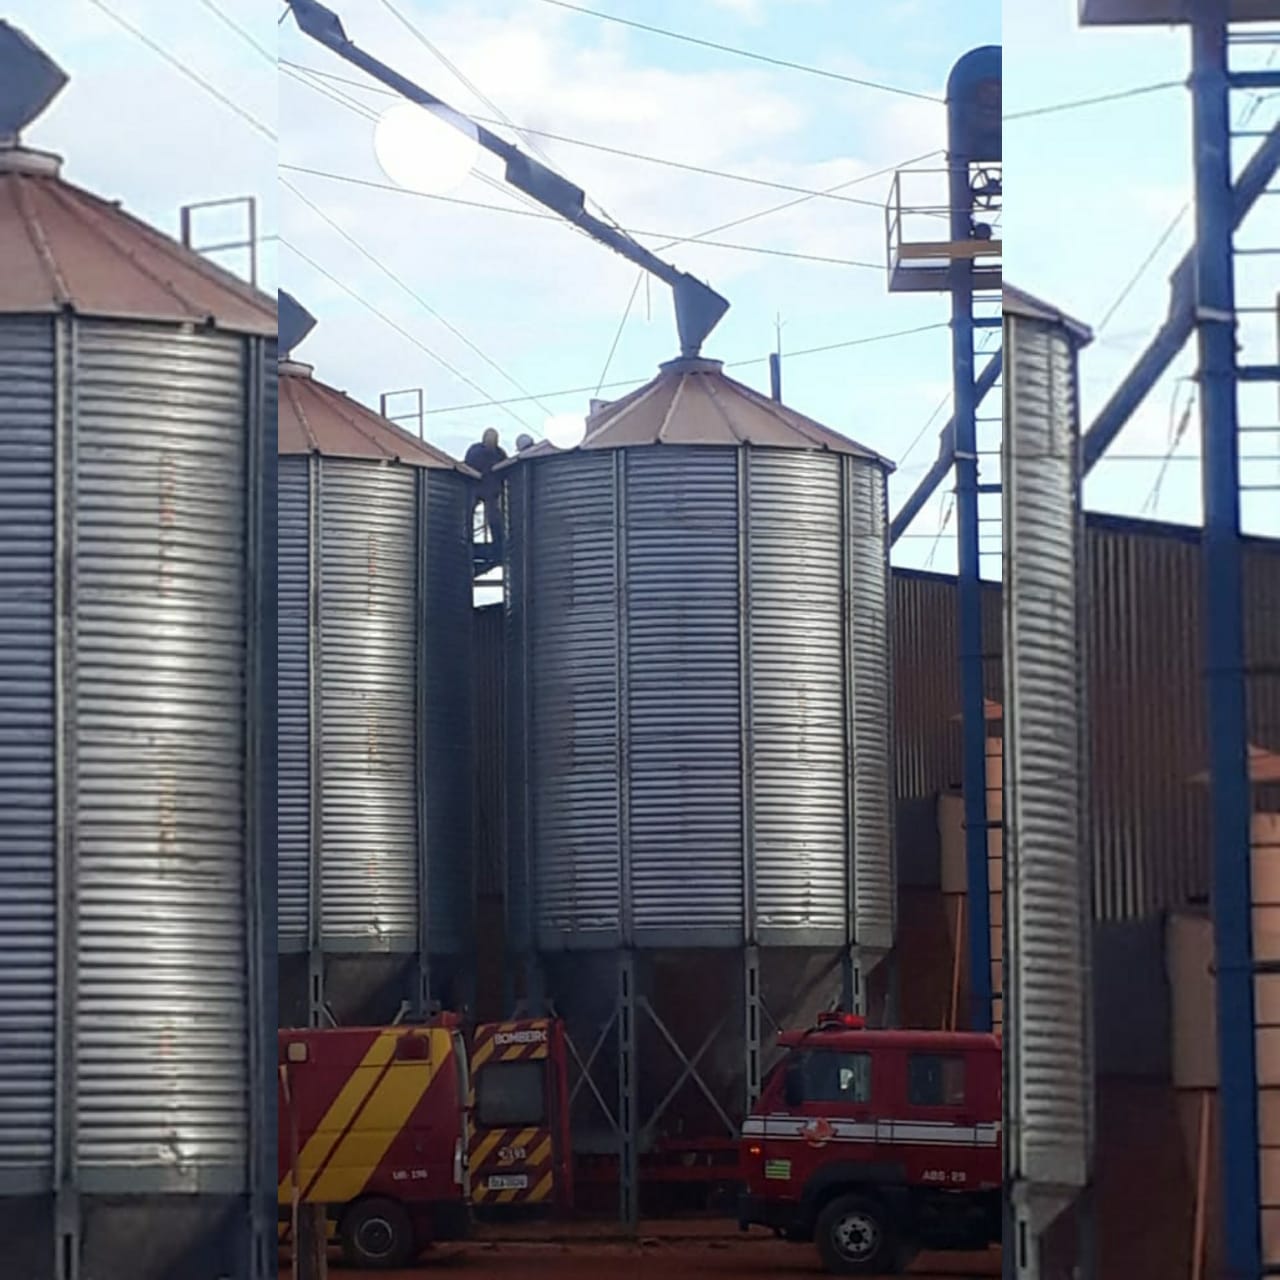 Equipes do Corpo de Bombeiros resgataram, nesta sexta-feira (27), um homem que caiu em um silo de grãos na cidade de Goiatuba. (Foto: Divulgação/Corpo de Bombeiros)